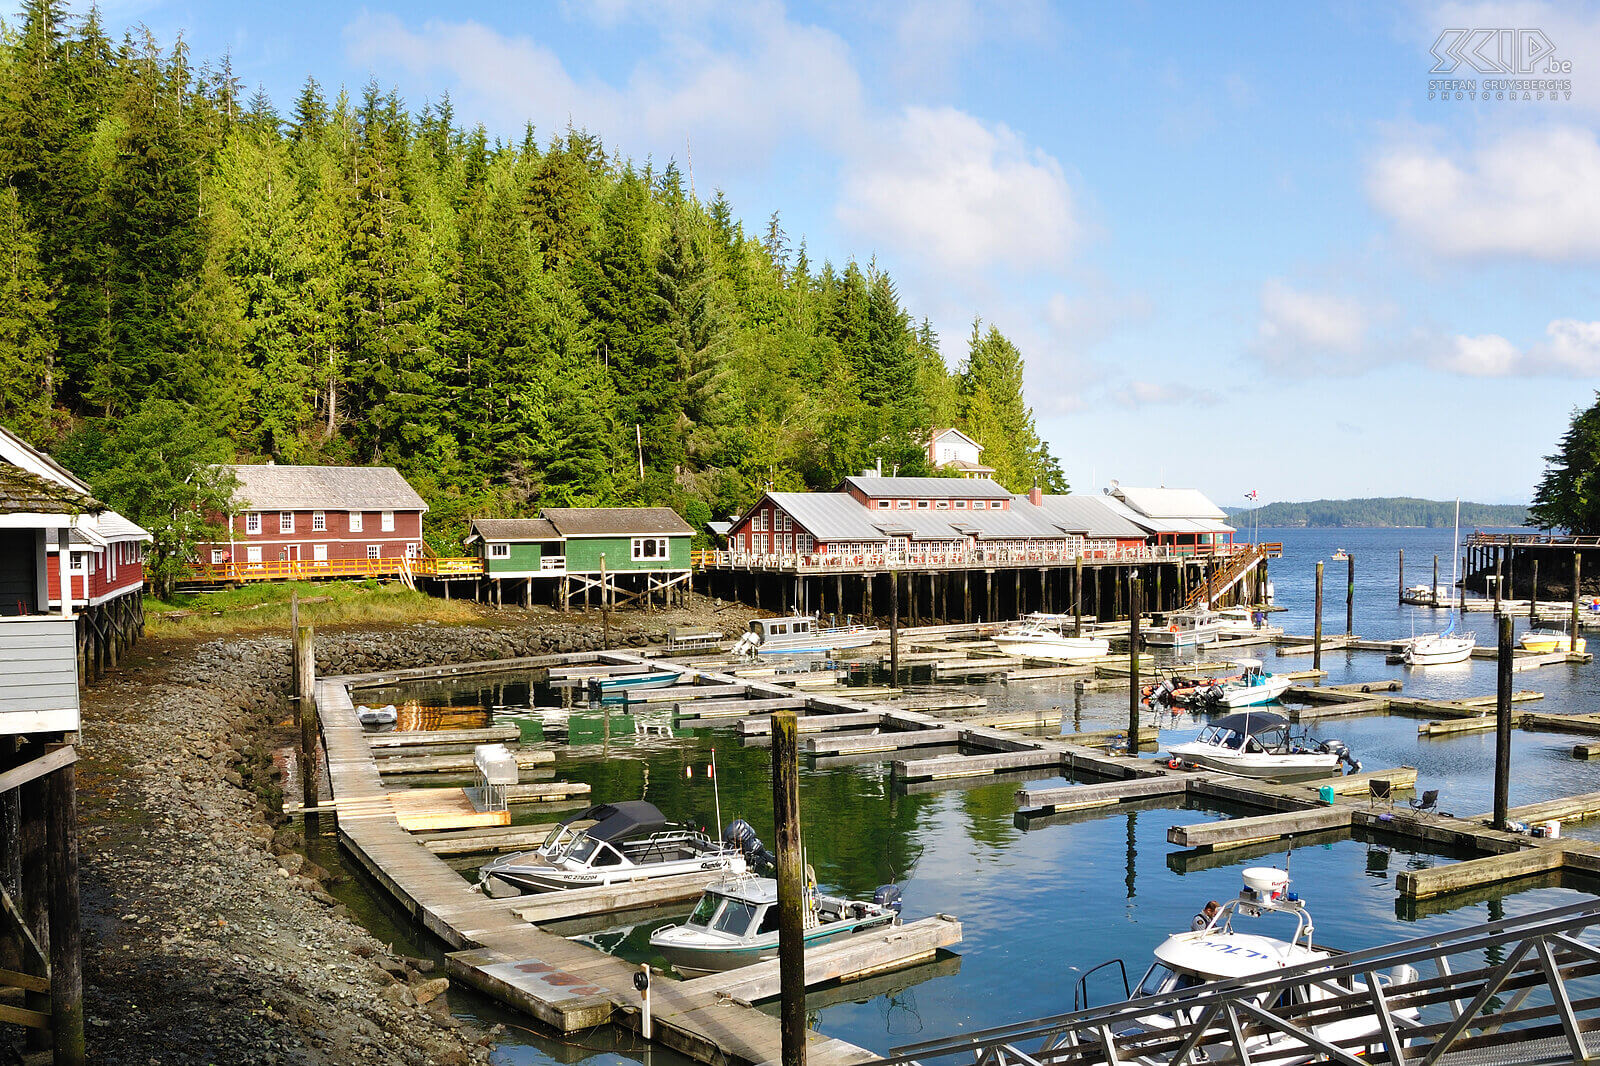 Telegraph Cove Telegraph Cove is een oud visserstadje aan de oostkust van Vancouver Island. De ideale uitvalbasis voor tochten op zee of naar de grizzlyberen op het vasteland. Stefan Cruysberghs